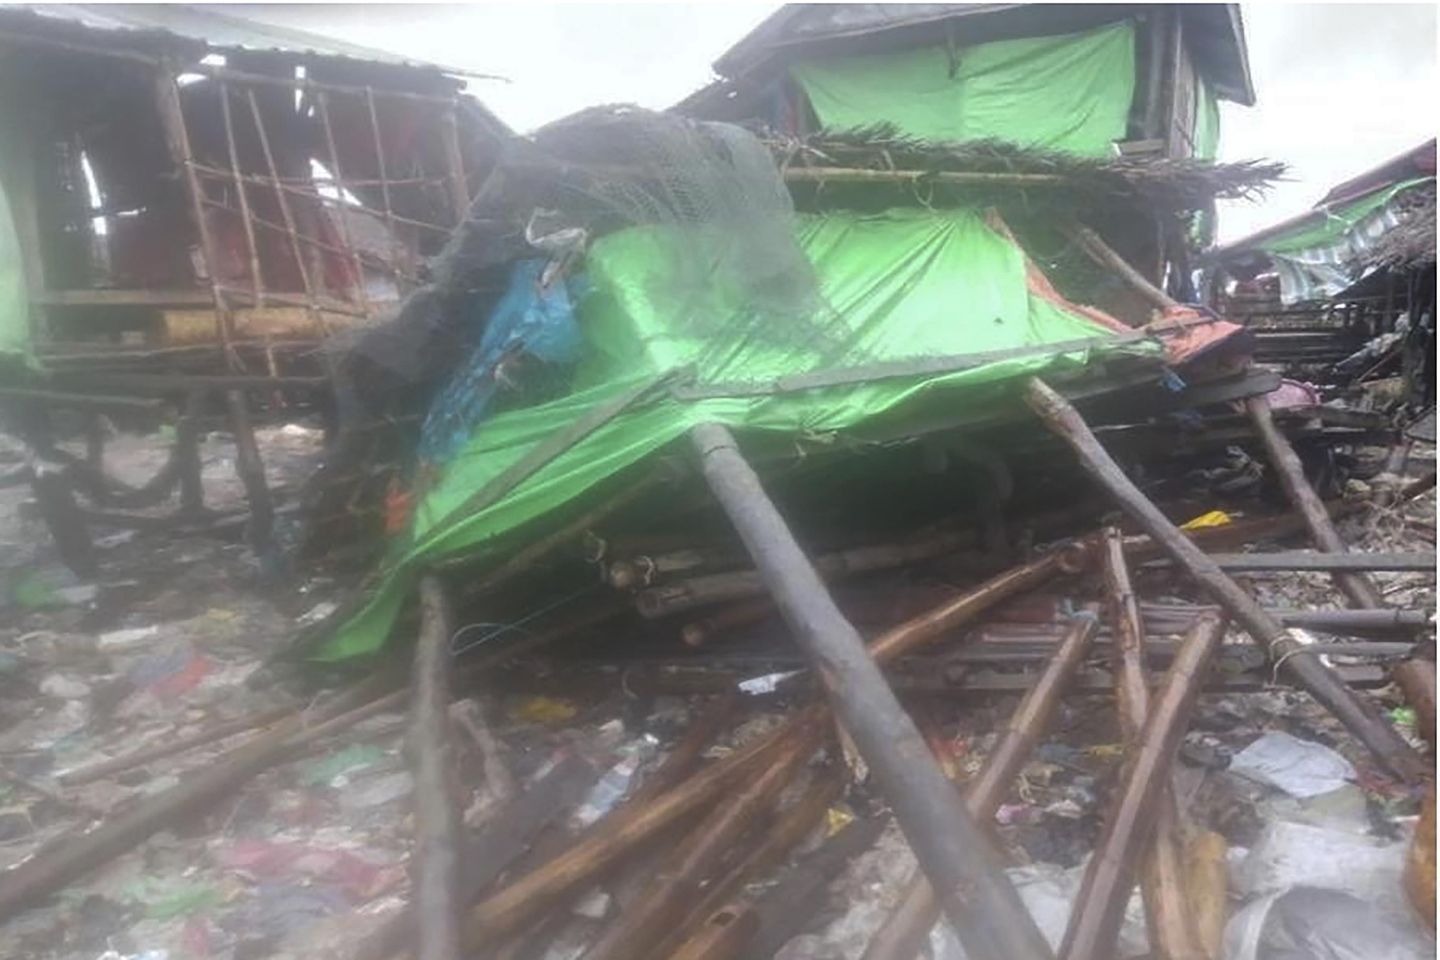 Güçlü Cyclone Mocha evleri sular altında bıraktı, batı Myanmar'daki iletişimi kesti, en az 700 kişi yaralandı